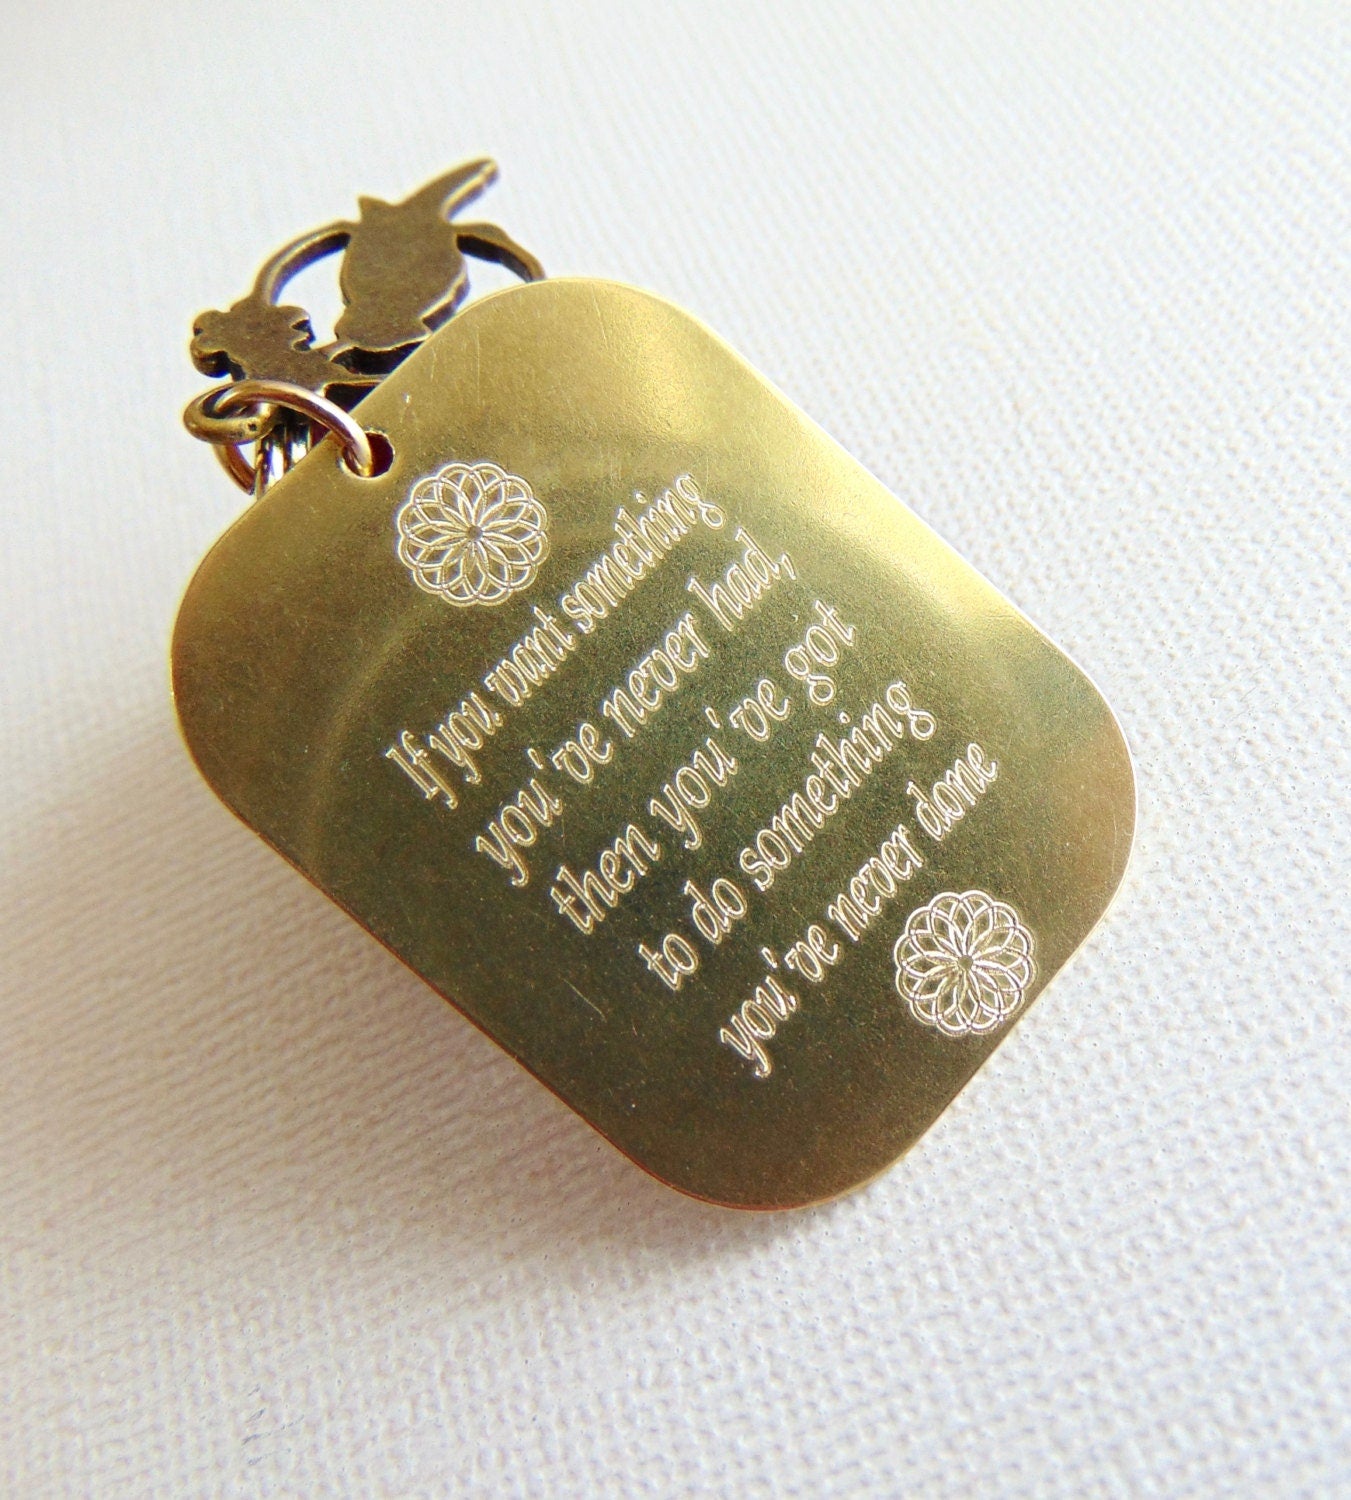 Llavero personalizado personalizado, llavero único estampado a mano, amuleto de llave de mensaje, llavero Mini mantra, placa de soporte de llave de cita inspiradora